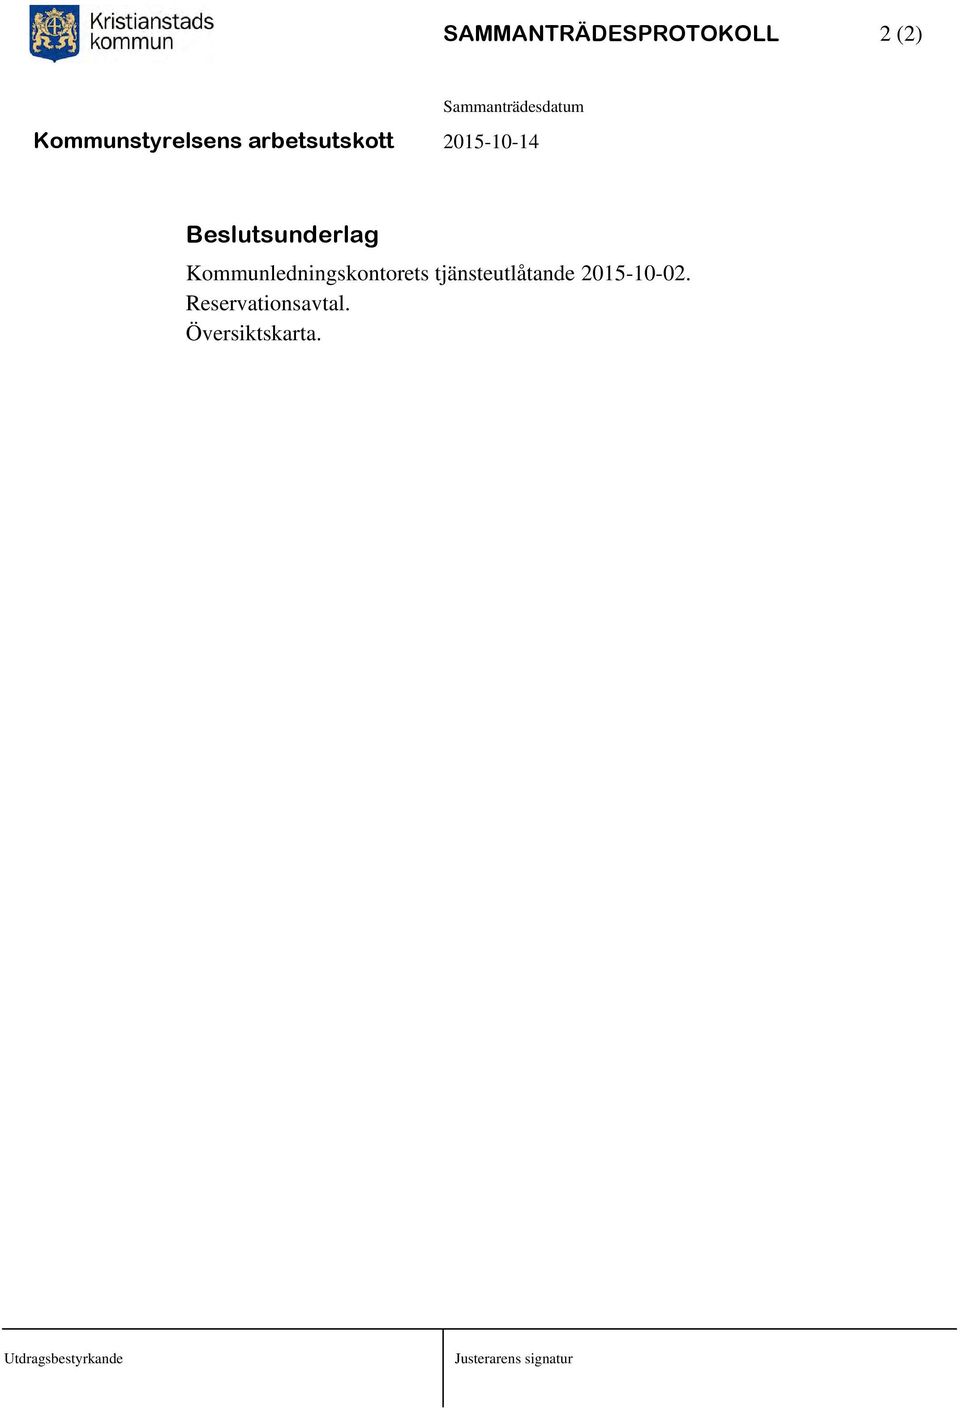 tjänsteutlåtande 2015-10-02.